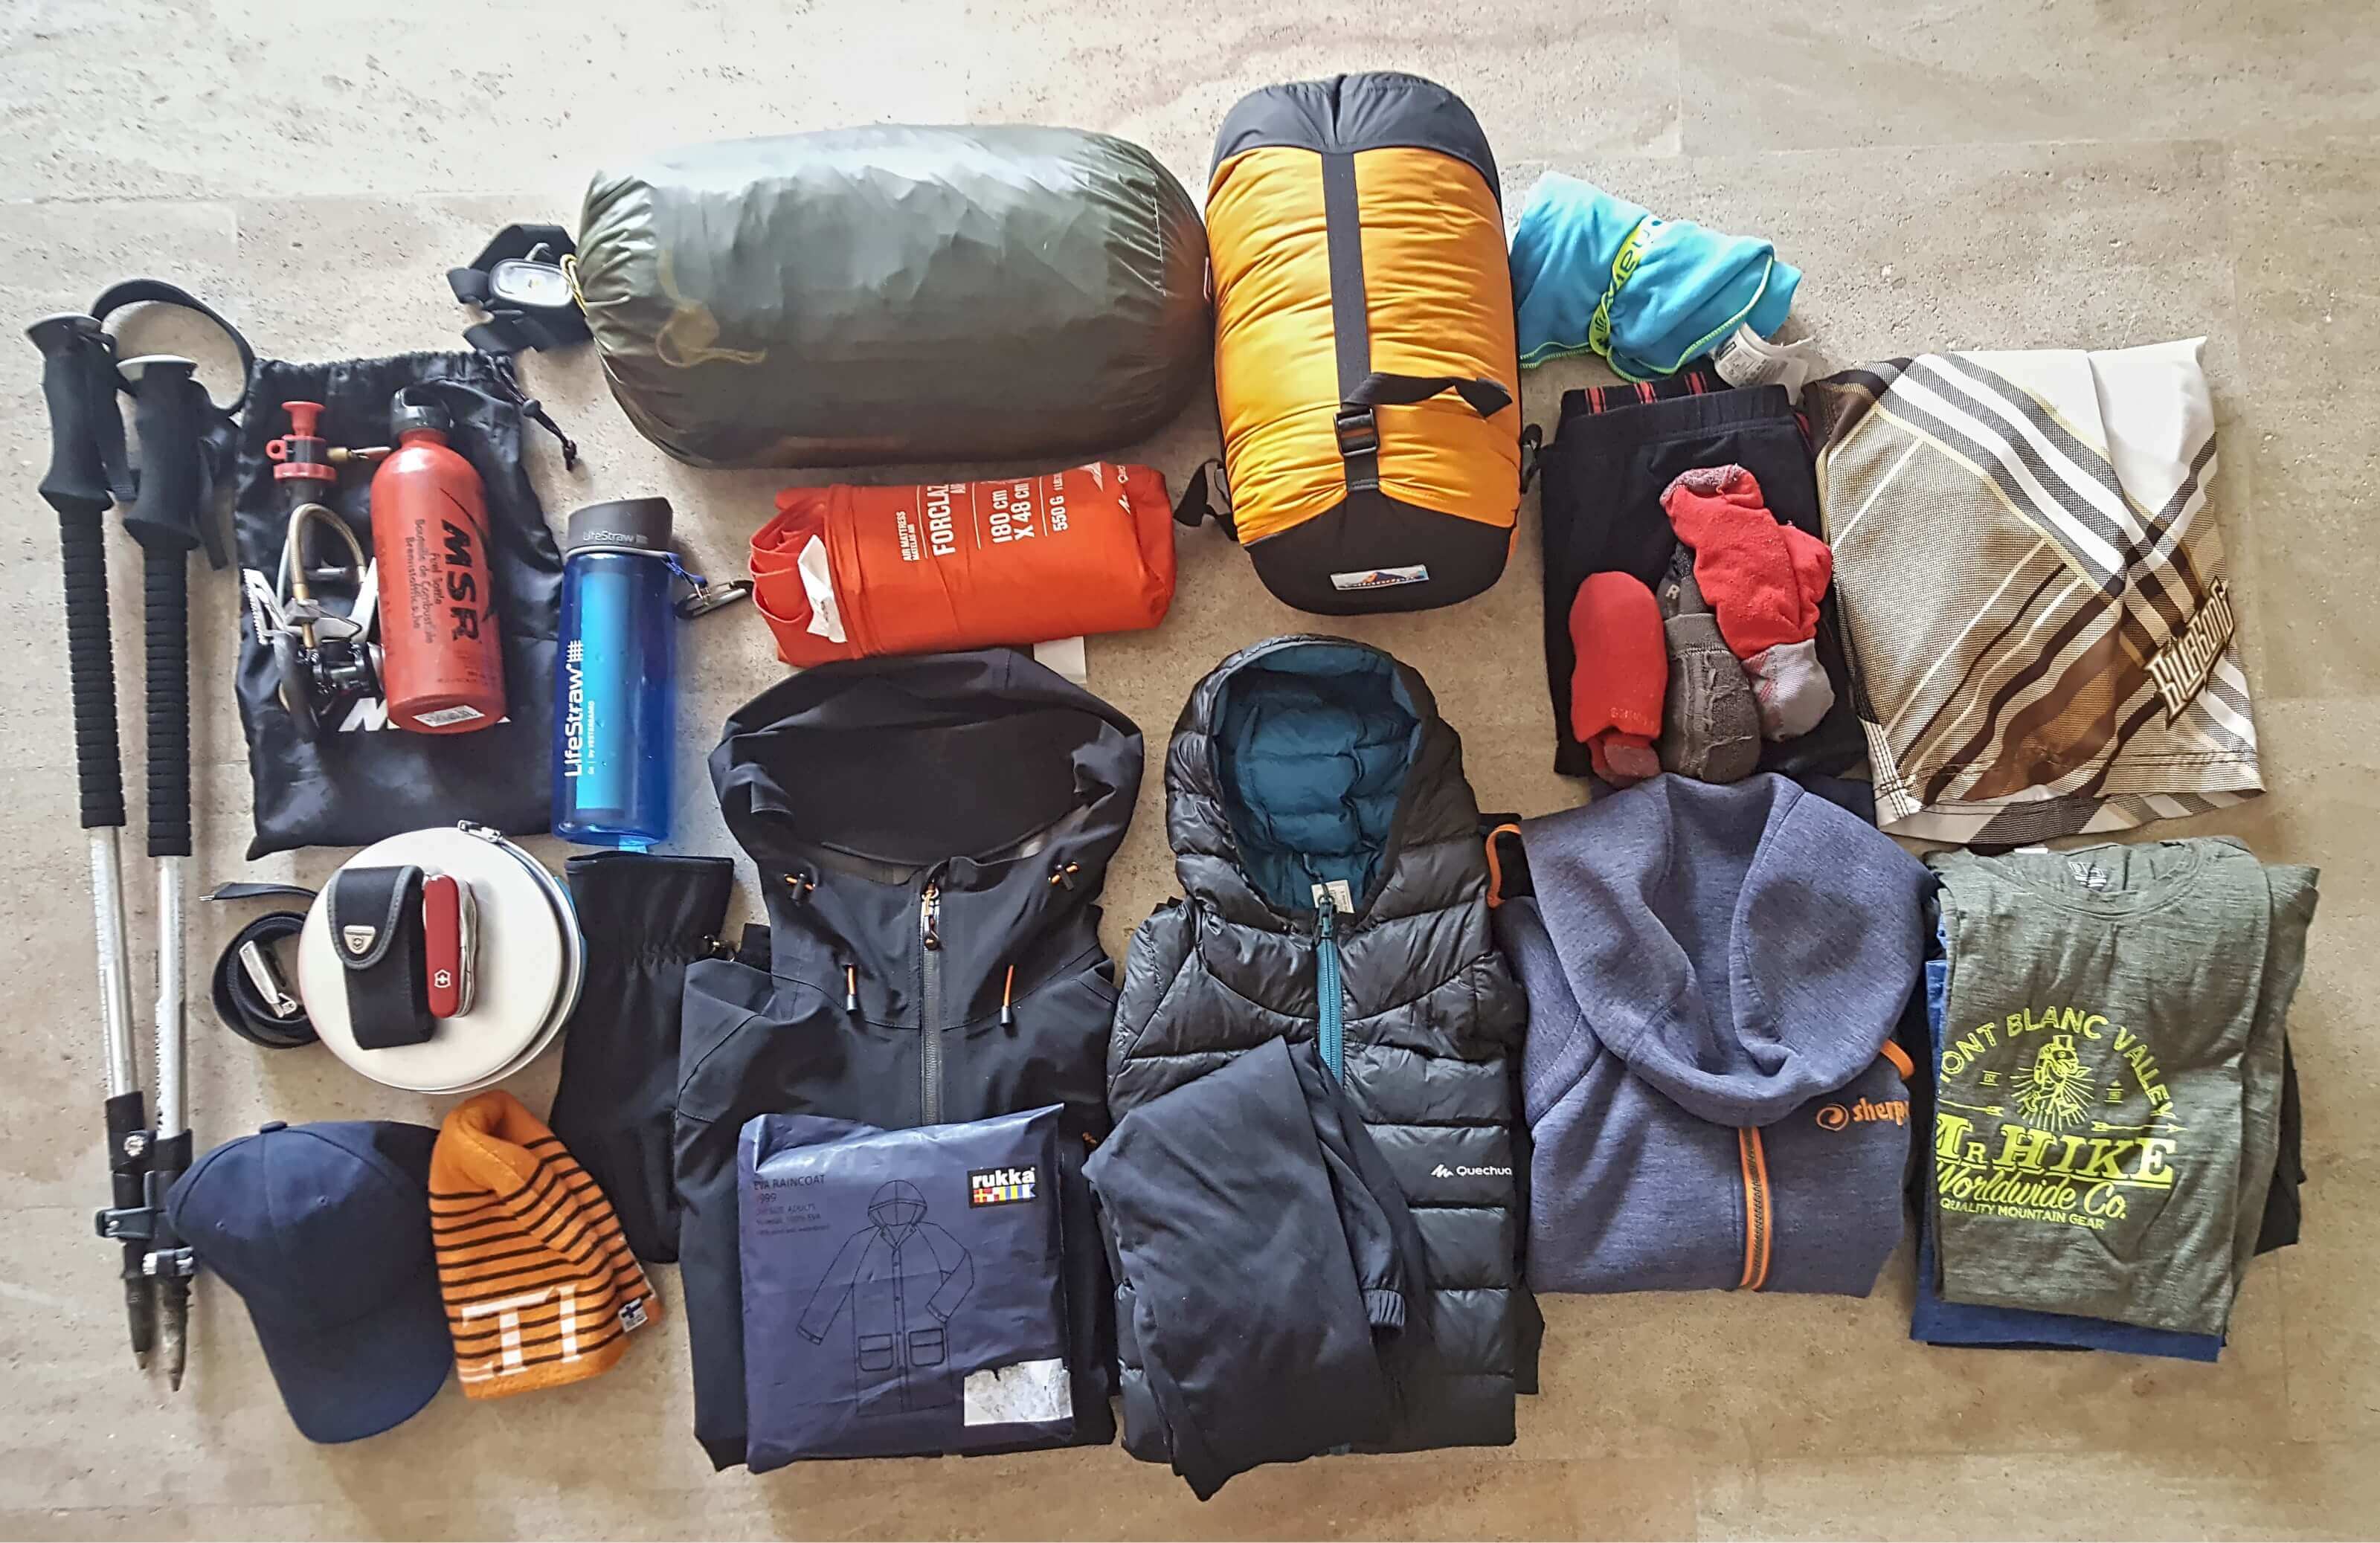 Le matériel de camping indispensable pour voyager léger